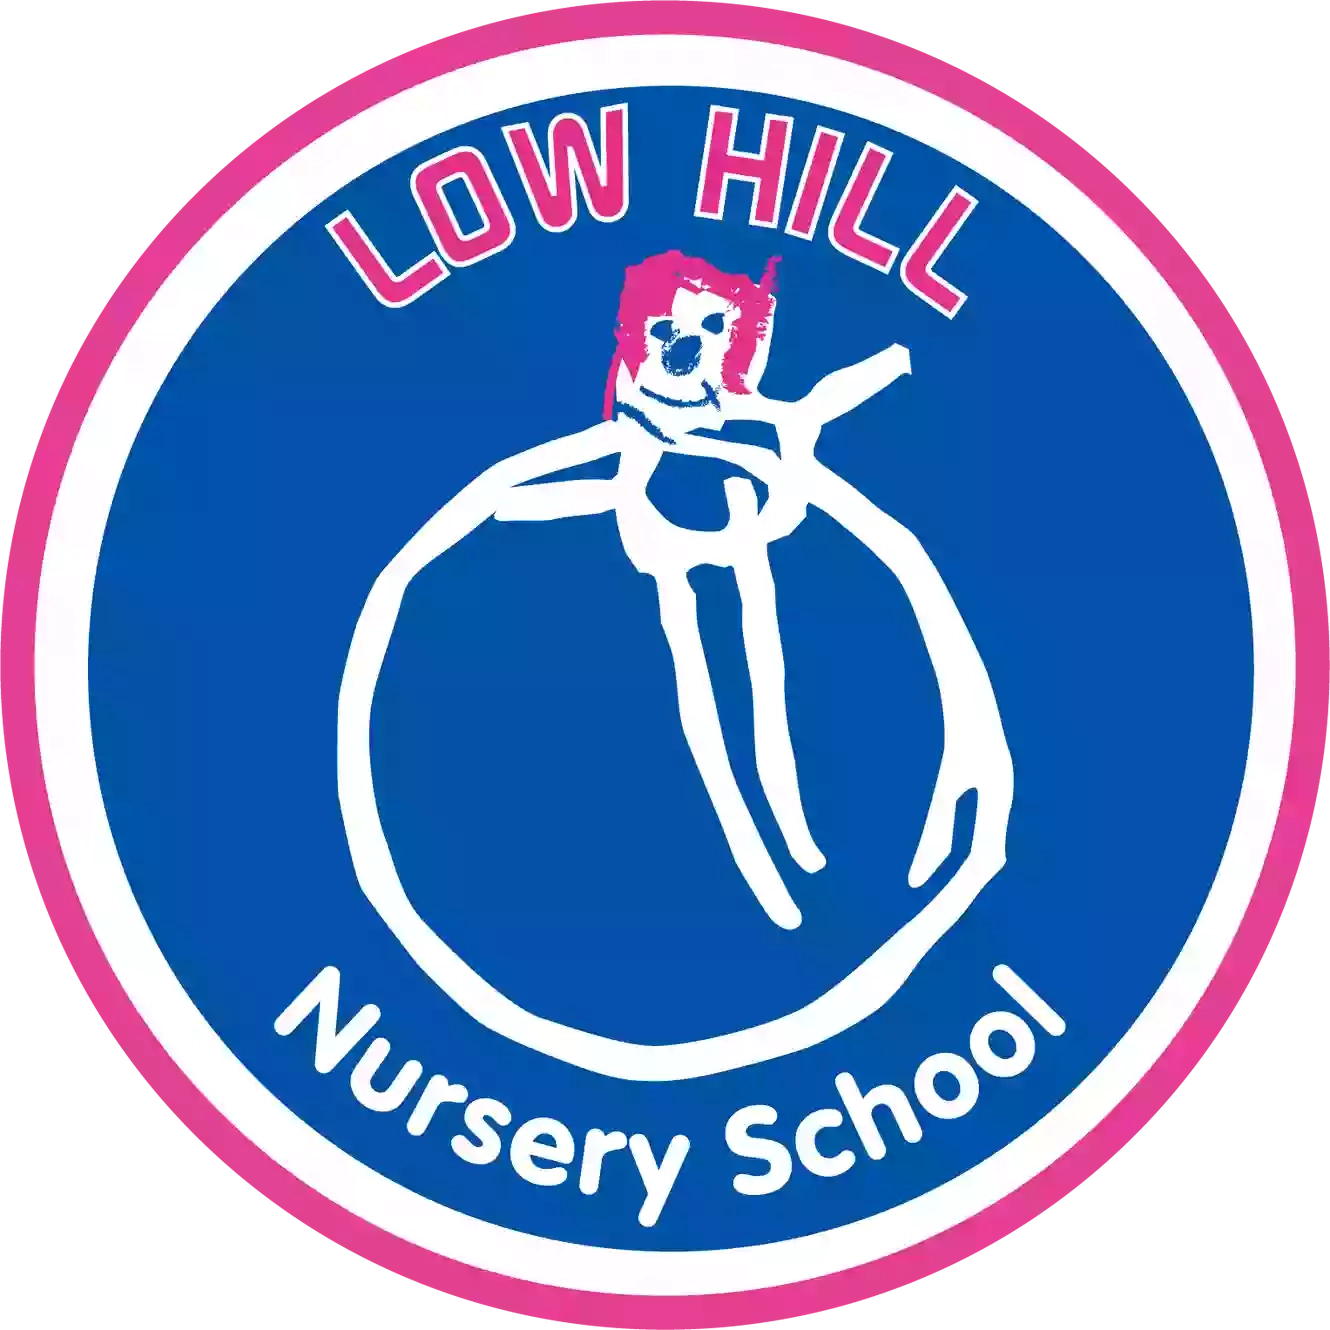 Low Hill Nursery School